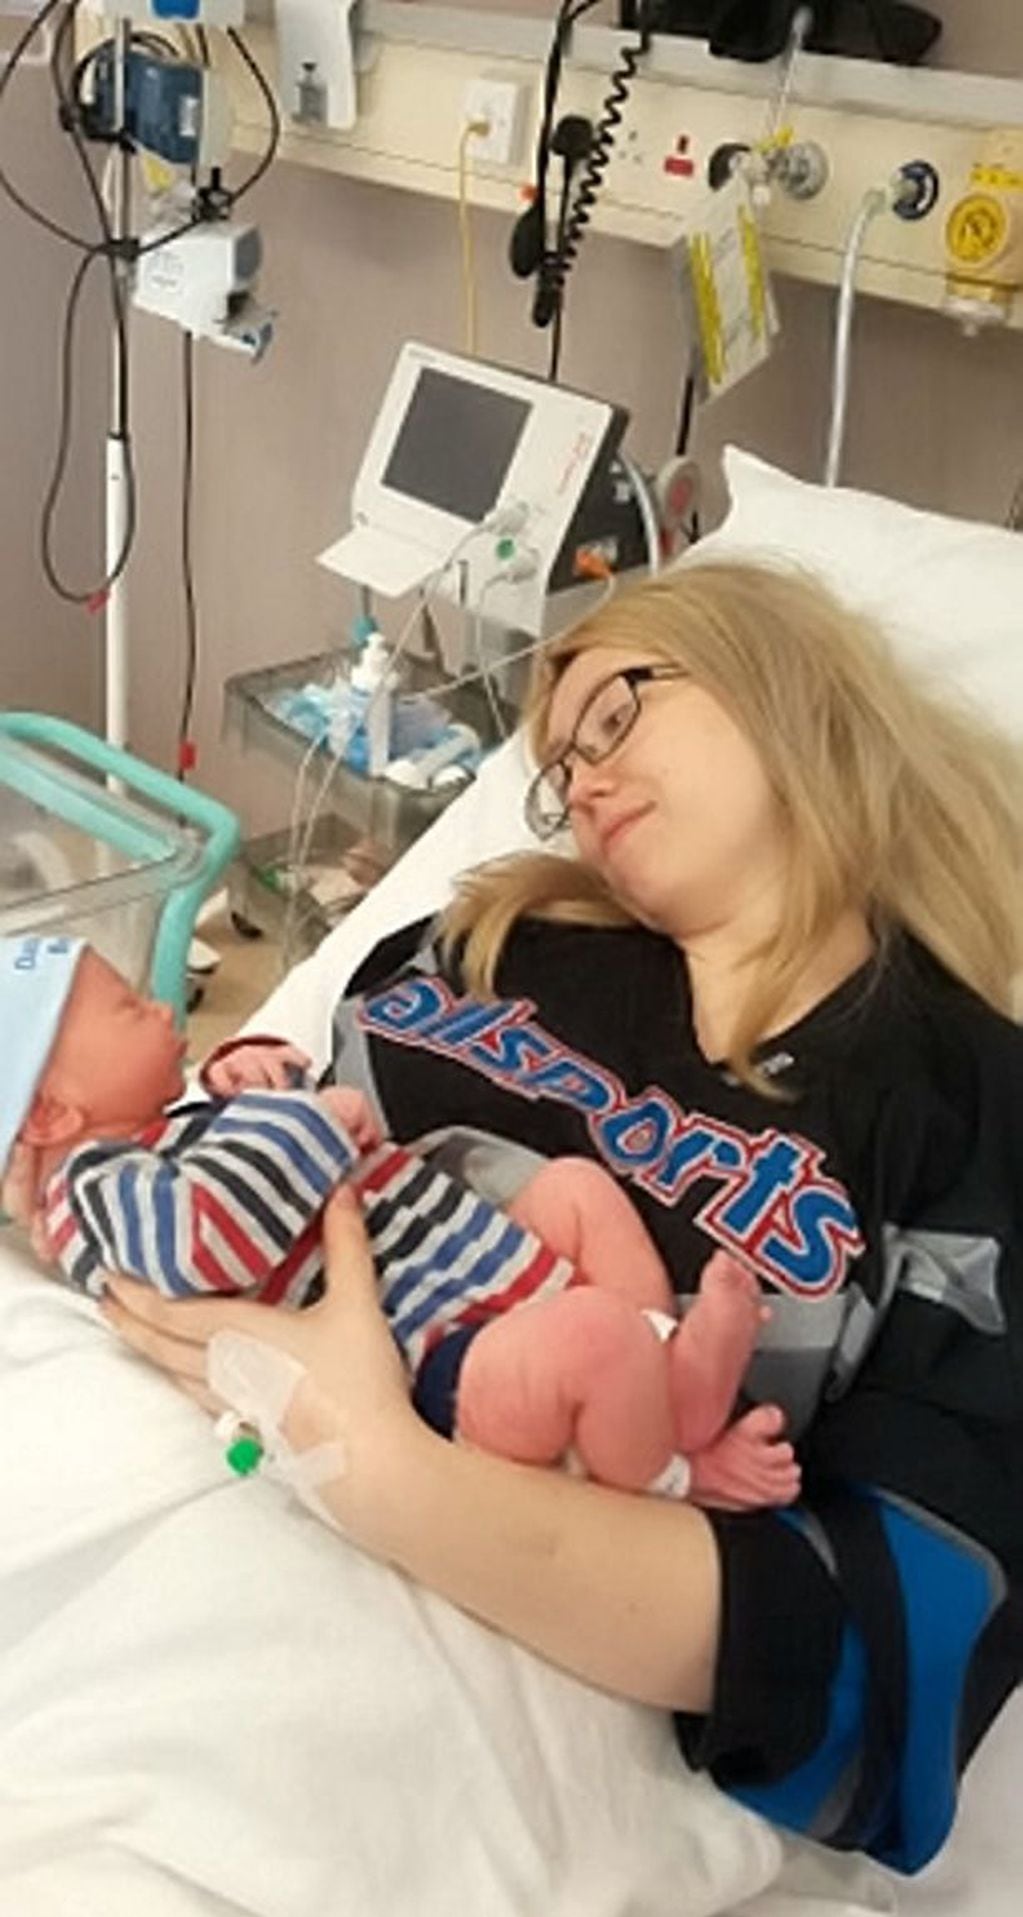 La mujer de 28 años experimentó dolores de estómago y minutos después dio a luz a un bebé. Foto Mirror.